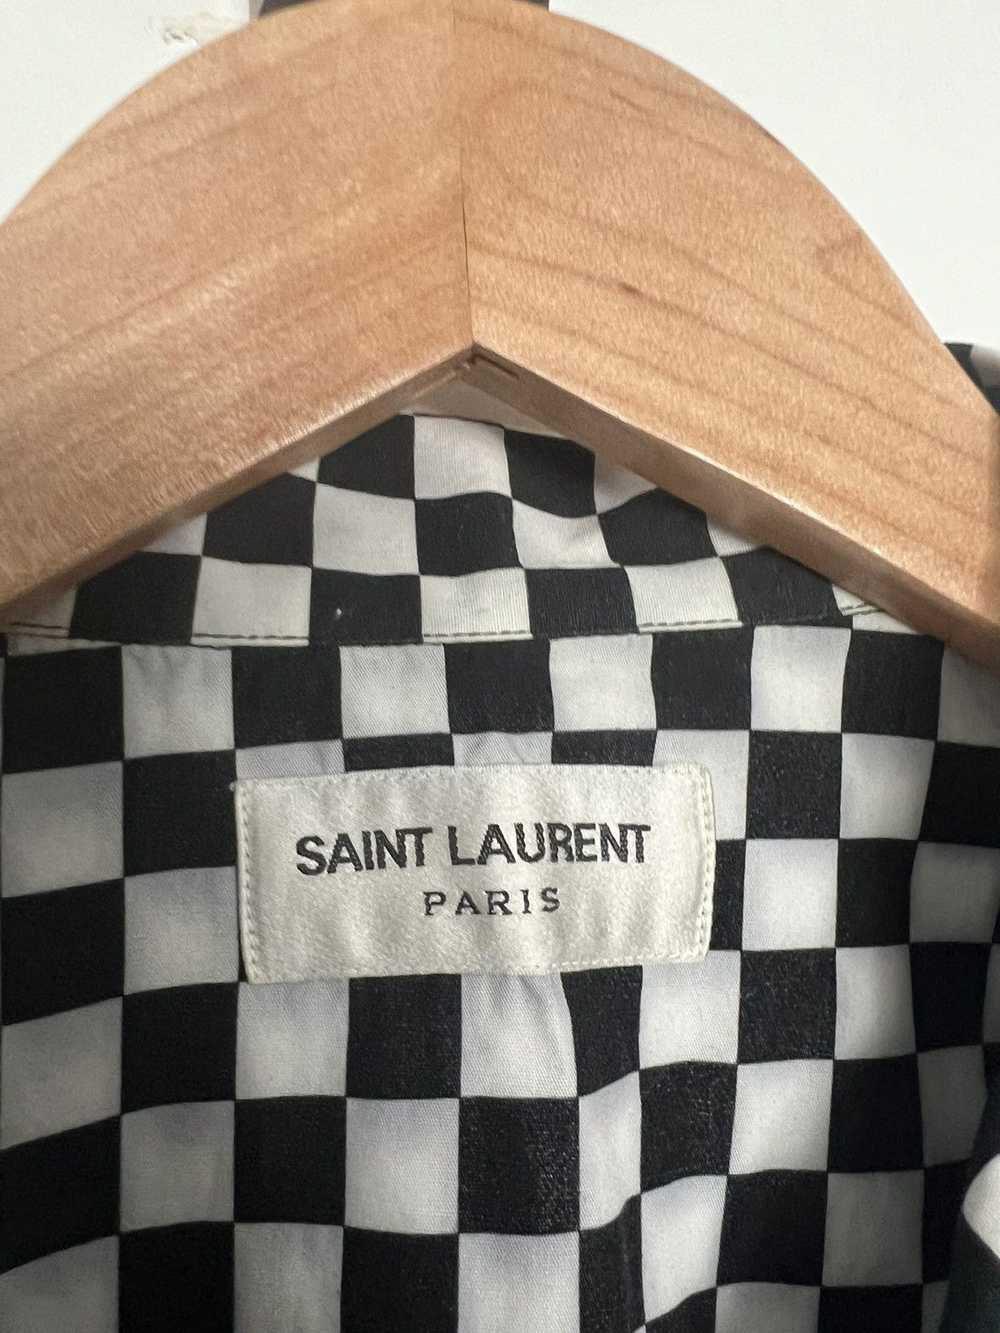 Saint Laurent Paris Checkered shirt - image 2